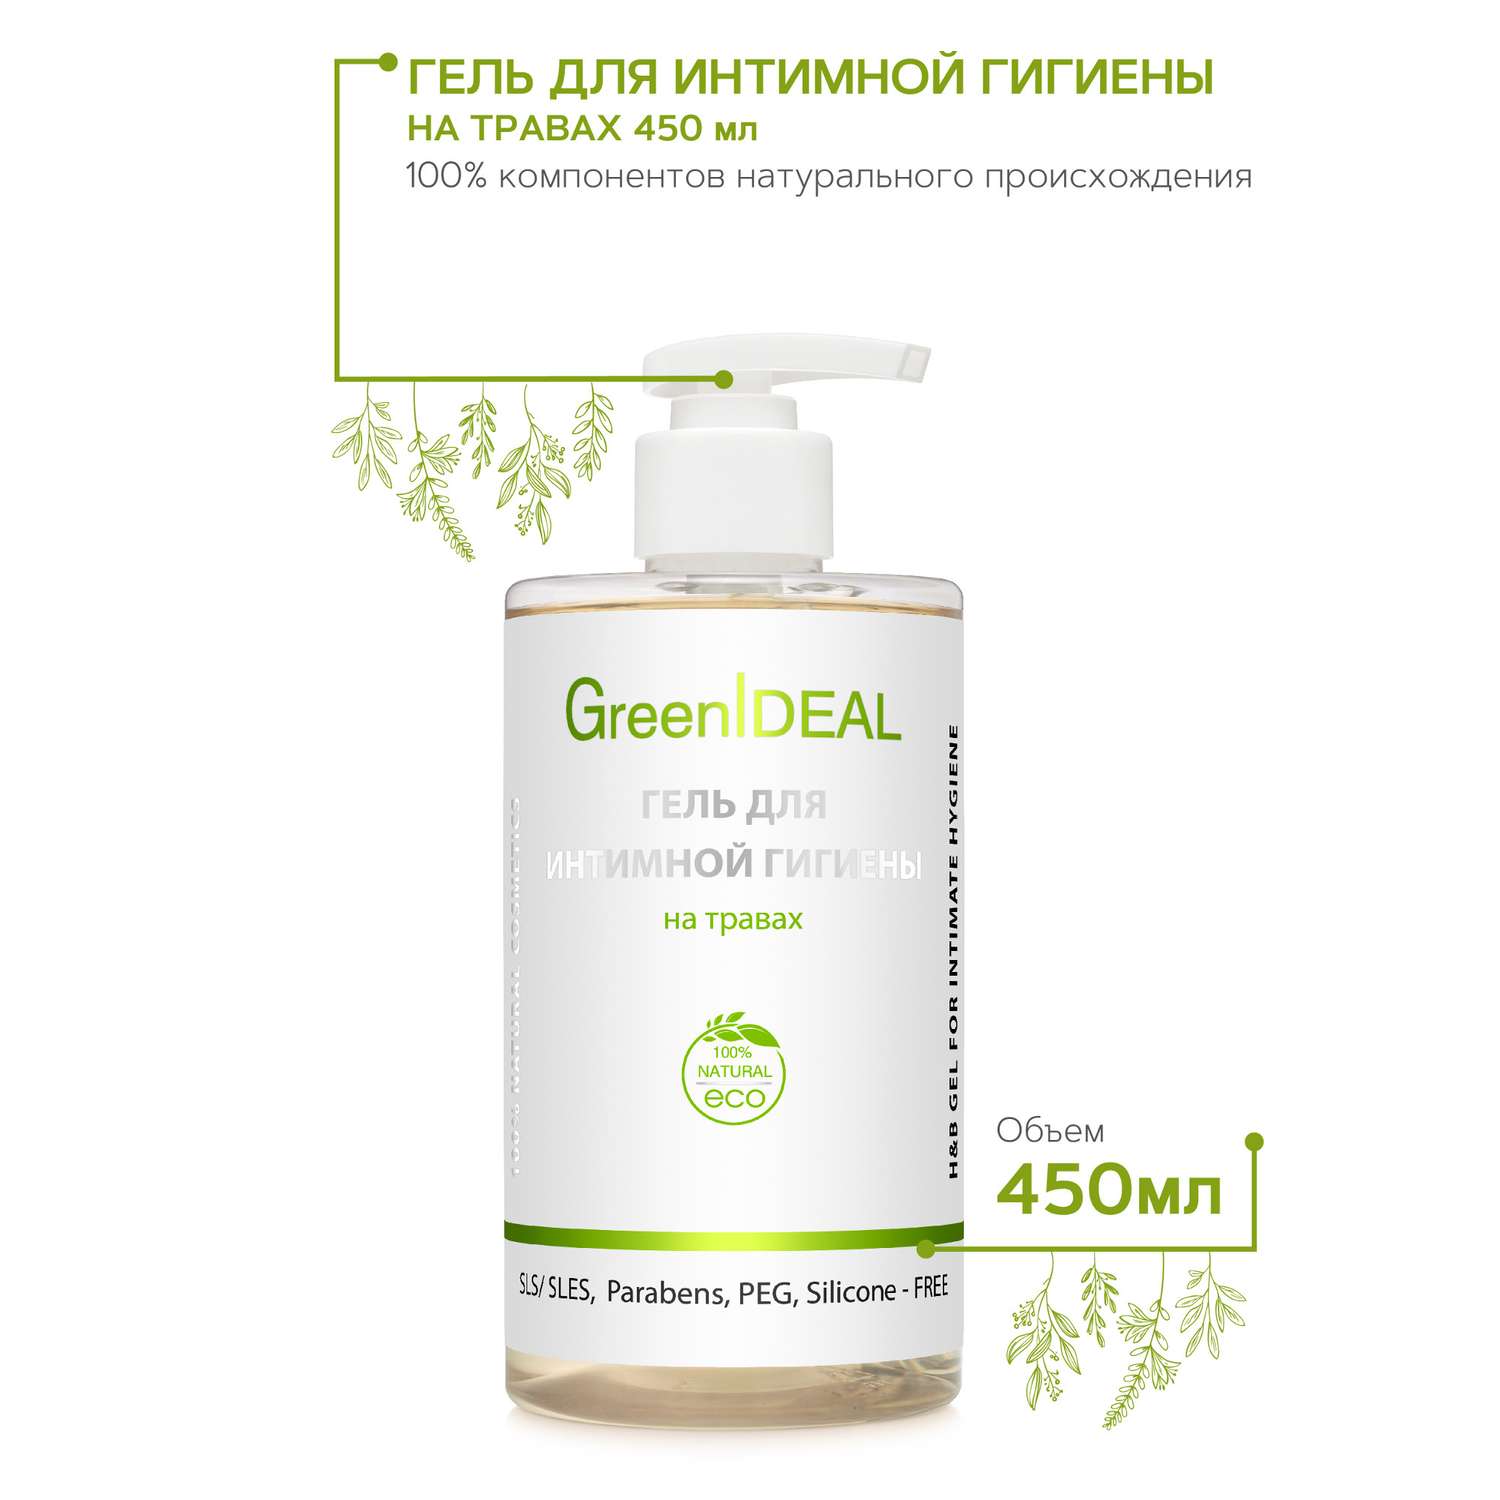 Гель для интимной гигиены GreenIDEAL Прозрачный на травах 450 мл - фото 2